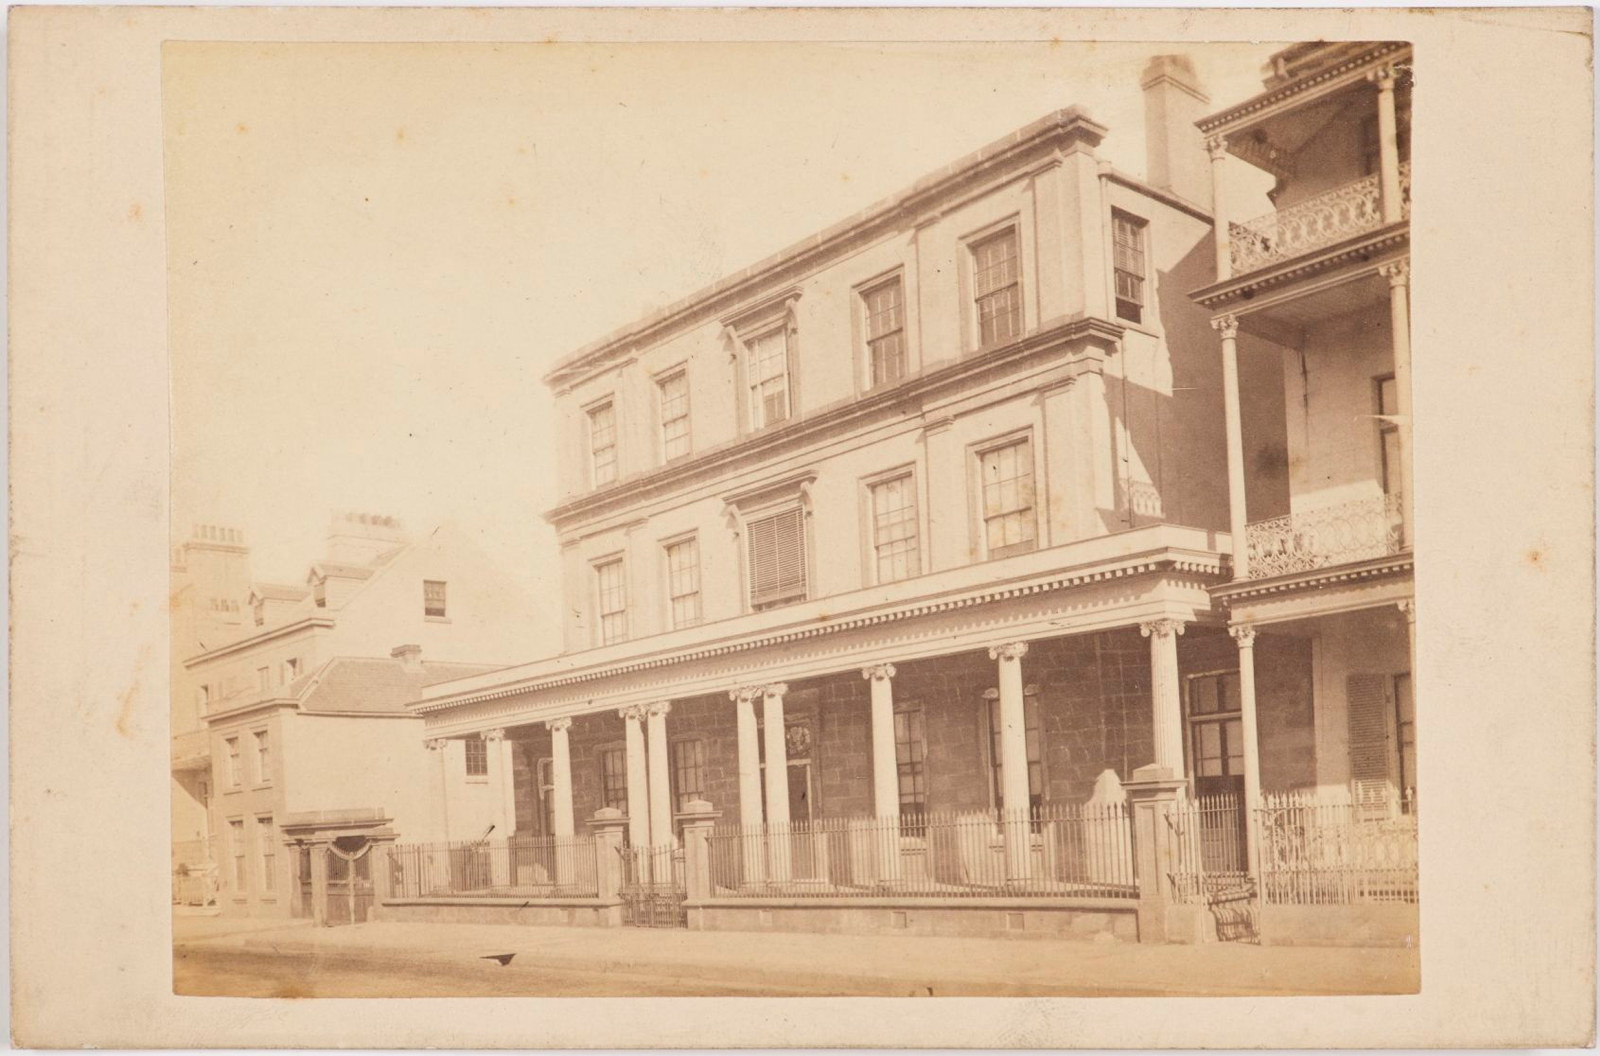 Burdekin House, 1870s